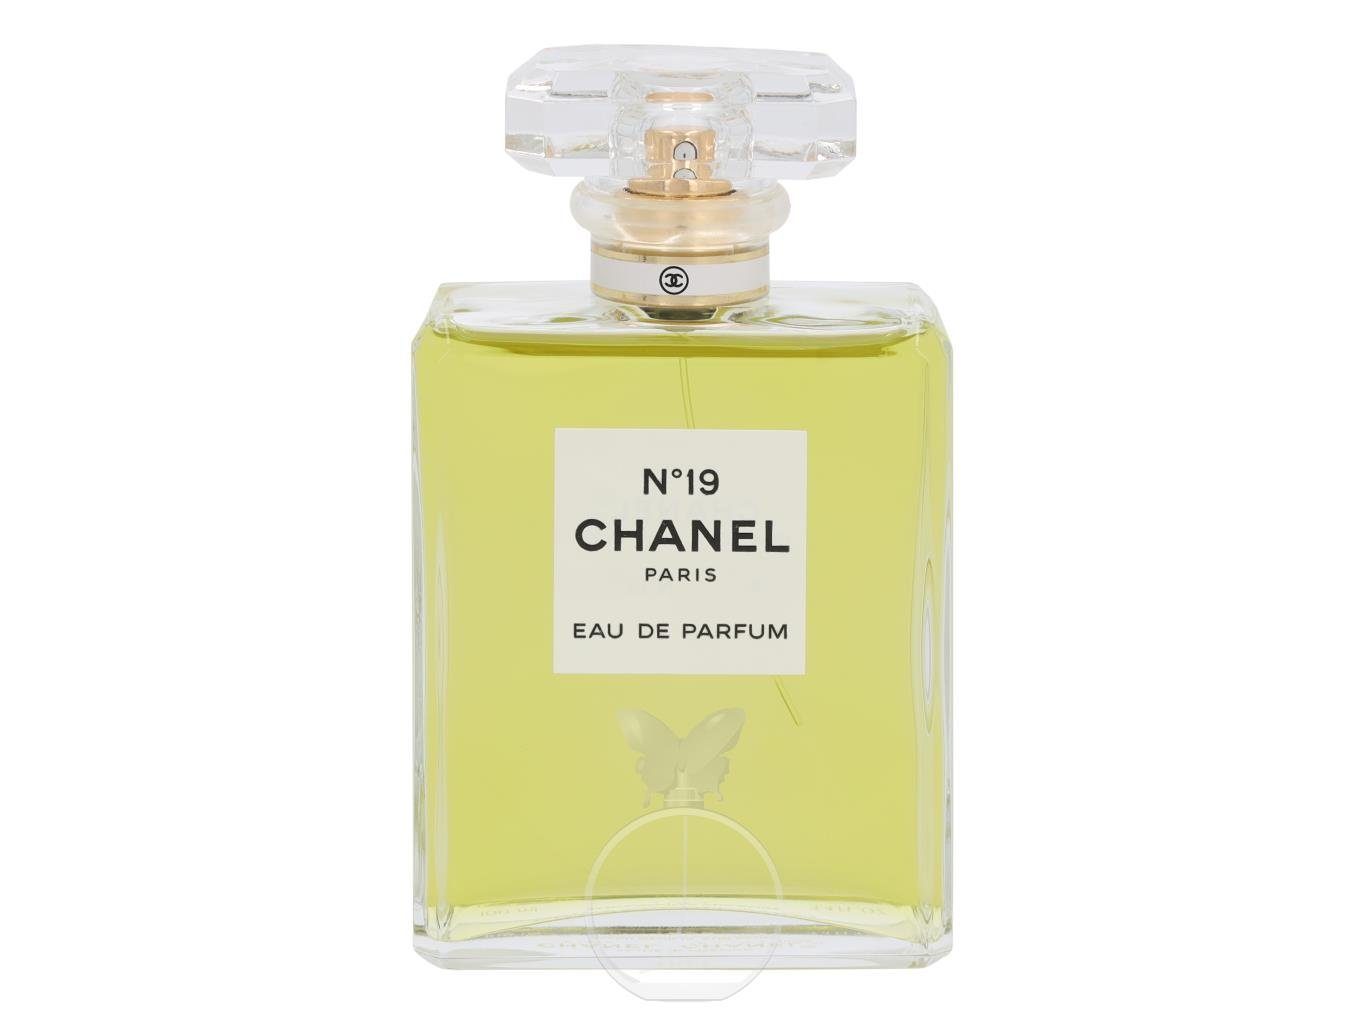 CHANEL Eau de Parfum Chanel No 19 Edp Spray 100ml, Designer - Hersteller:  Chanel